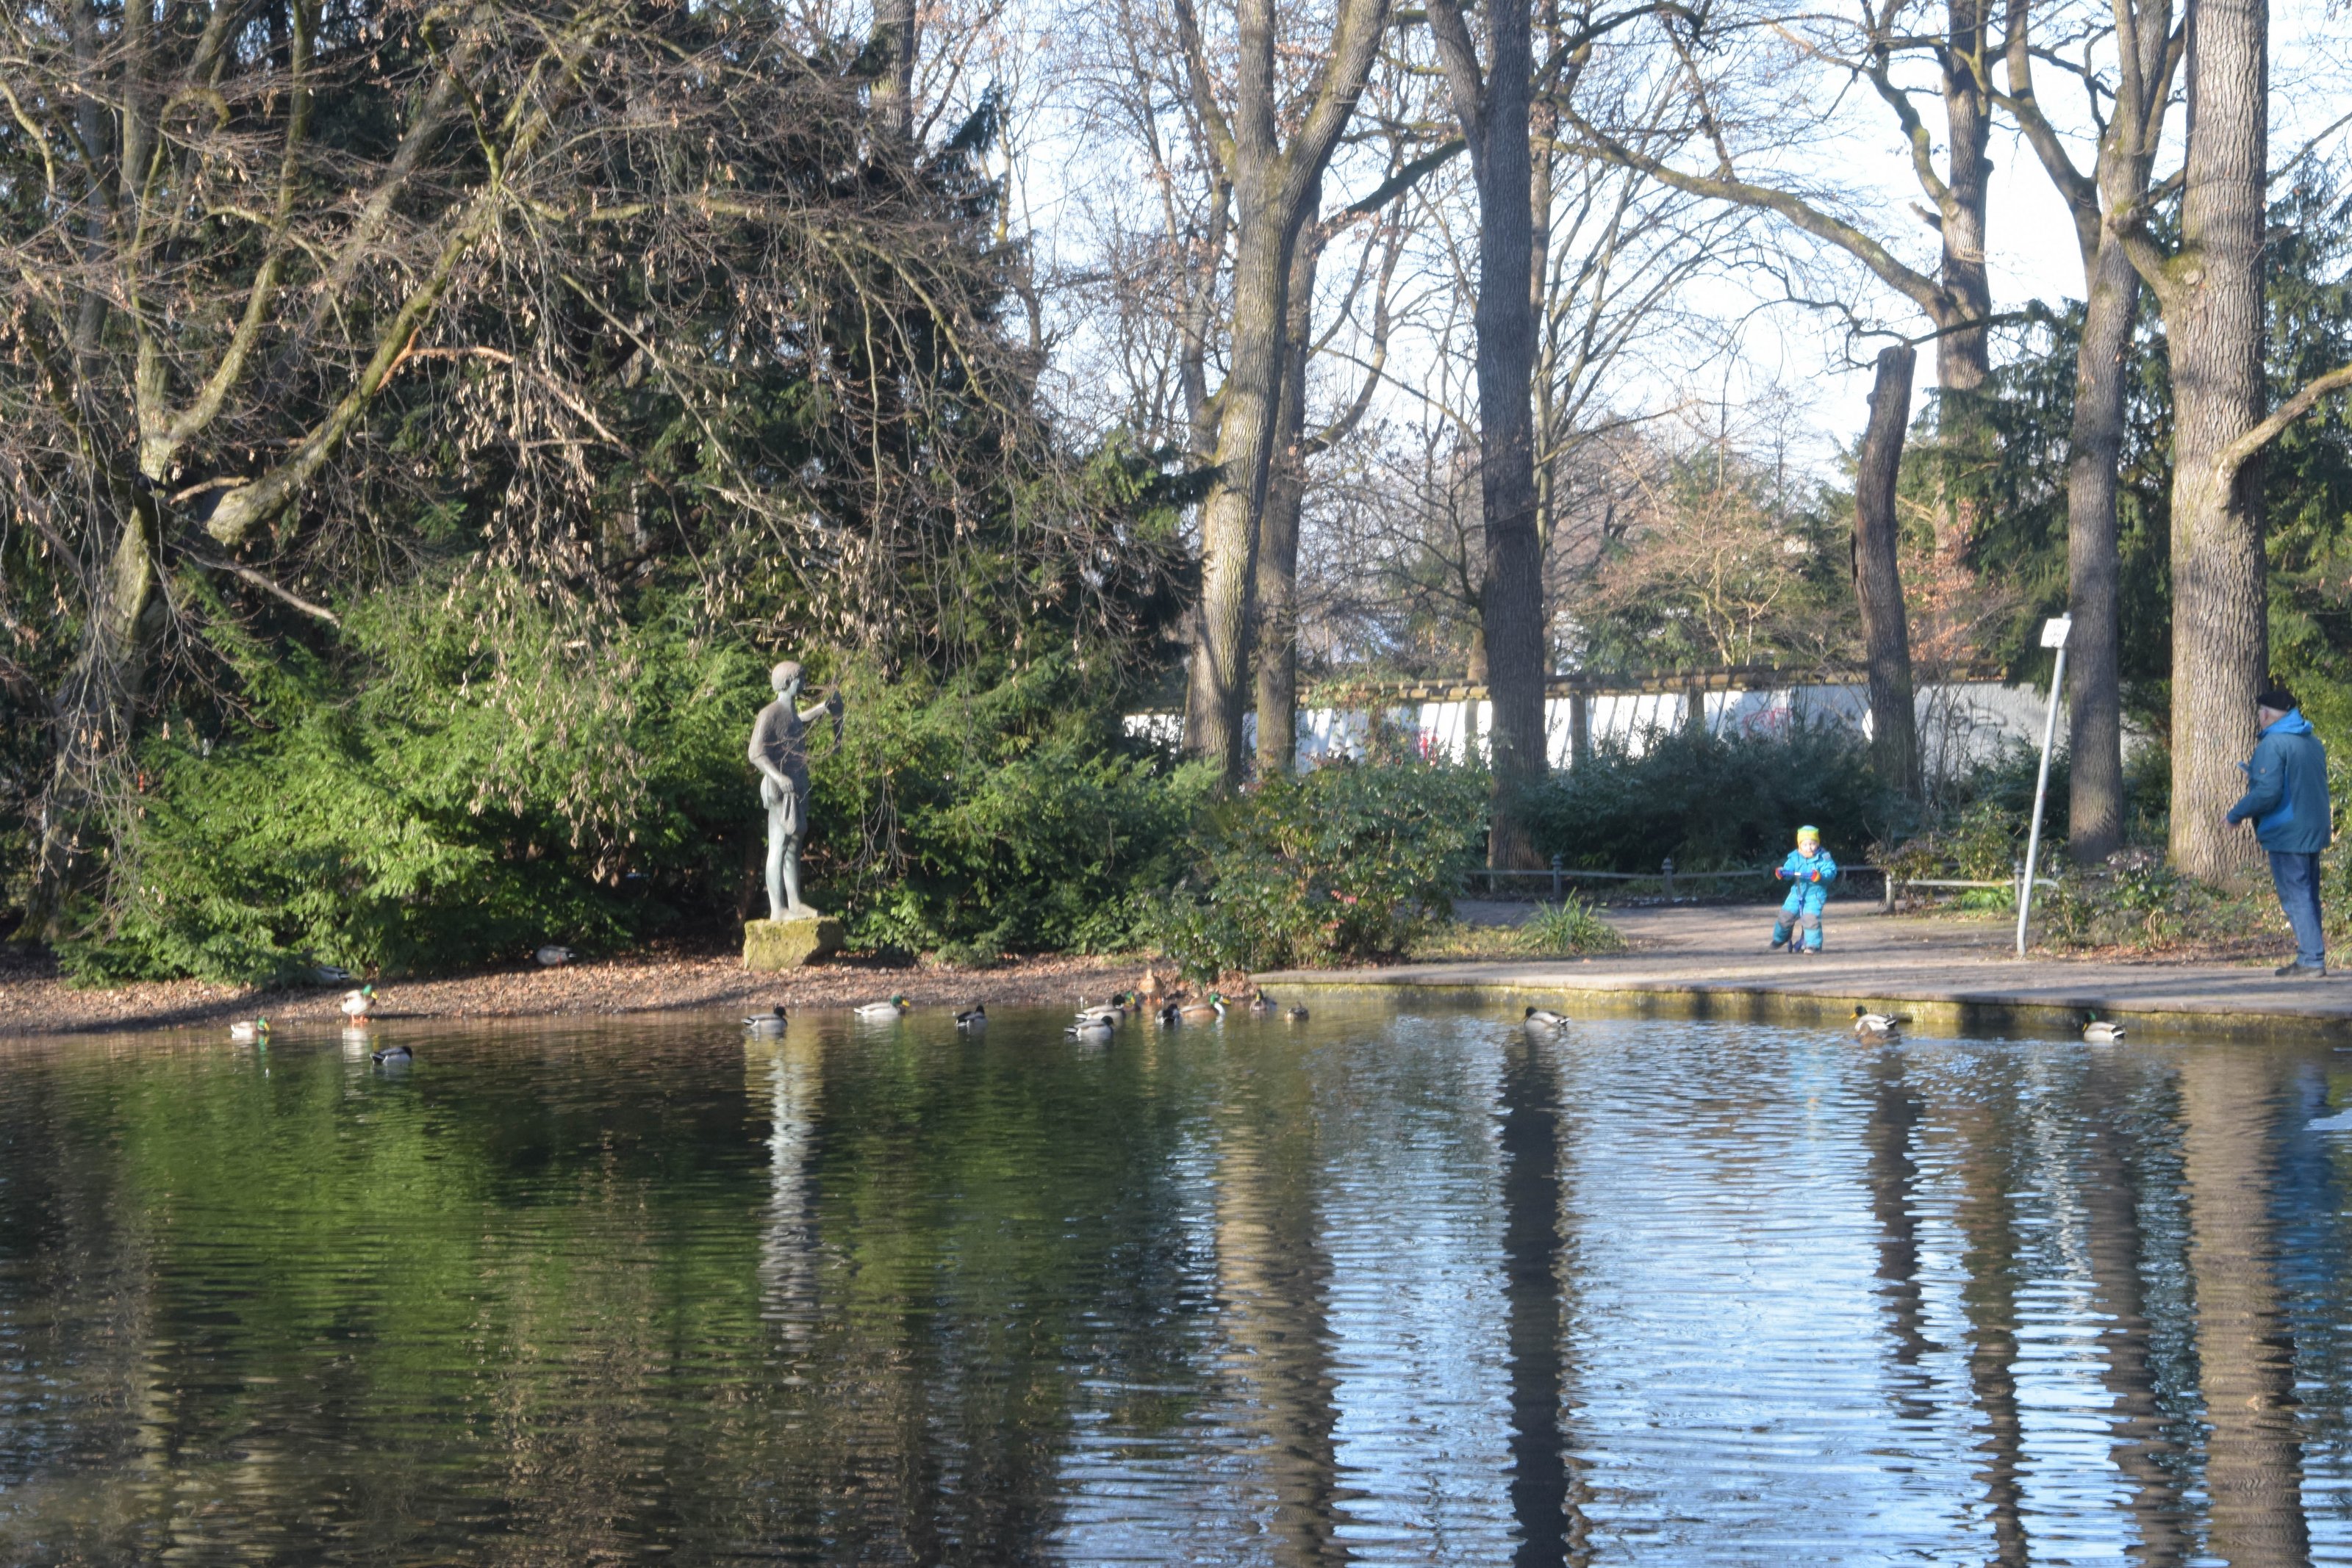 Ententeich im Nordosten des Hirschgarten. Es ist eine Statue am Teichrand, Enten auf dem Wasser und ein Kind mit Vater zu sehen. 